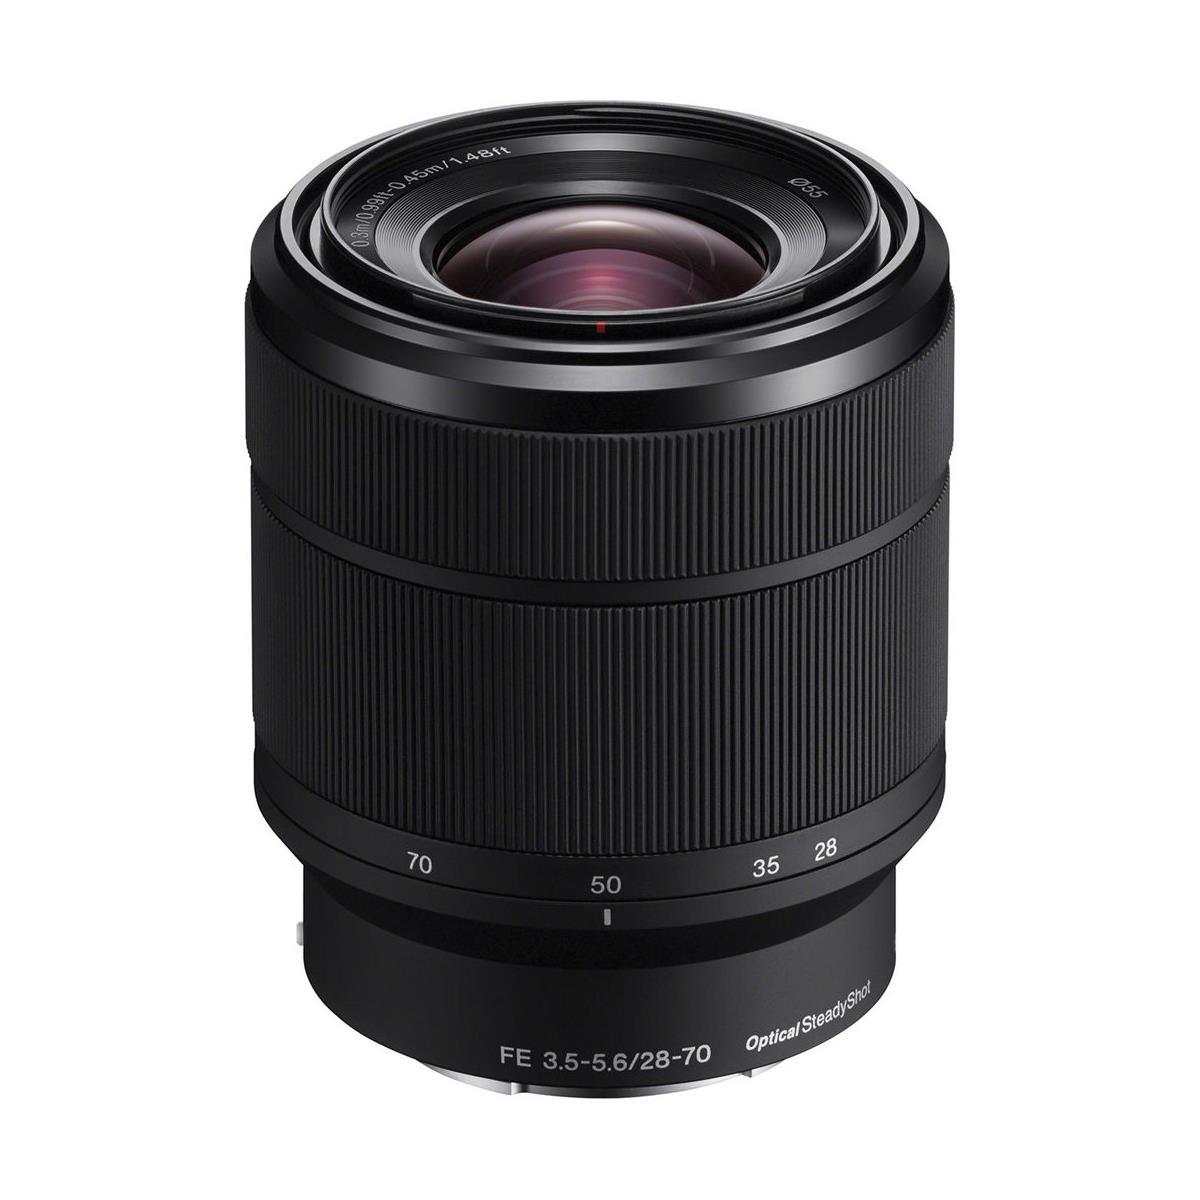 Image of Sony FE 28-70mm F3.5-5.6 OSS Lens for Sony E